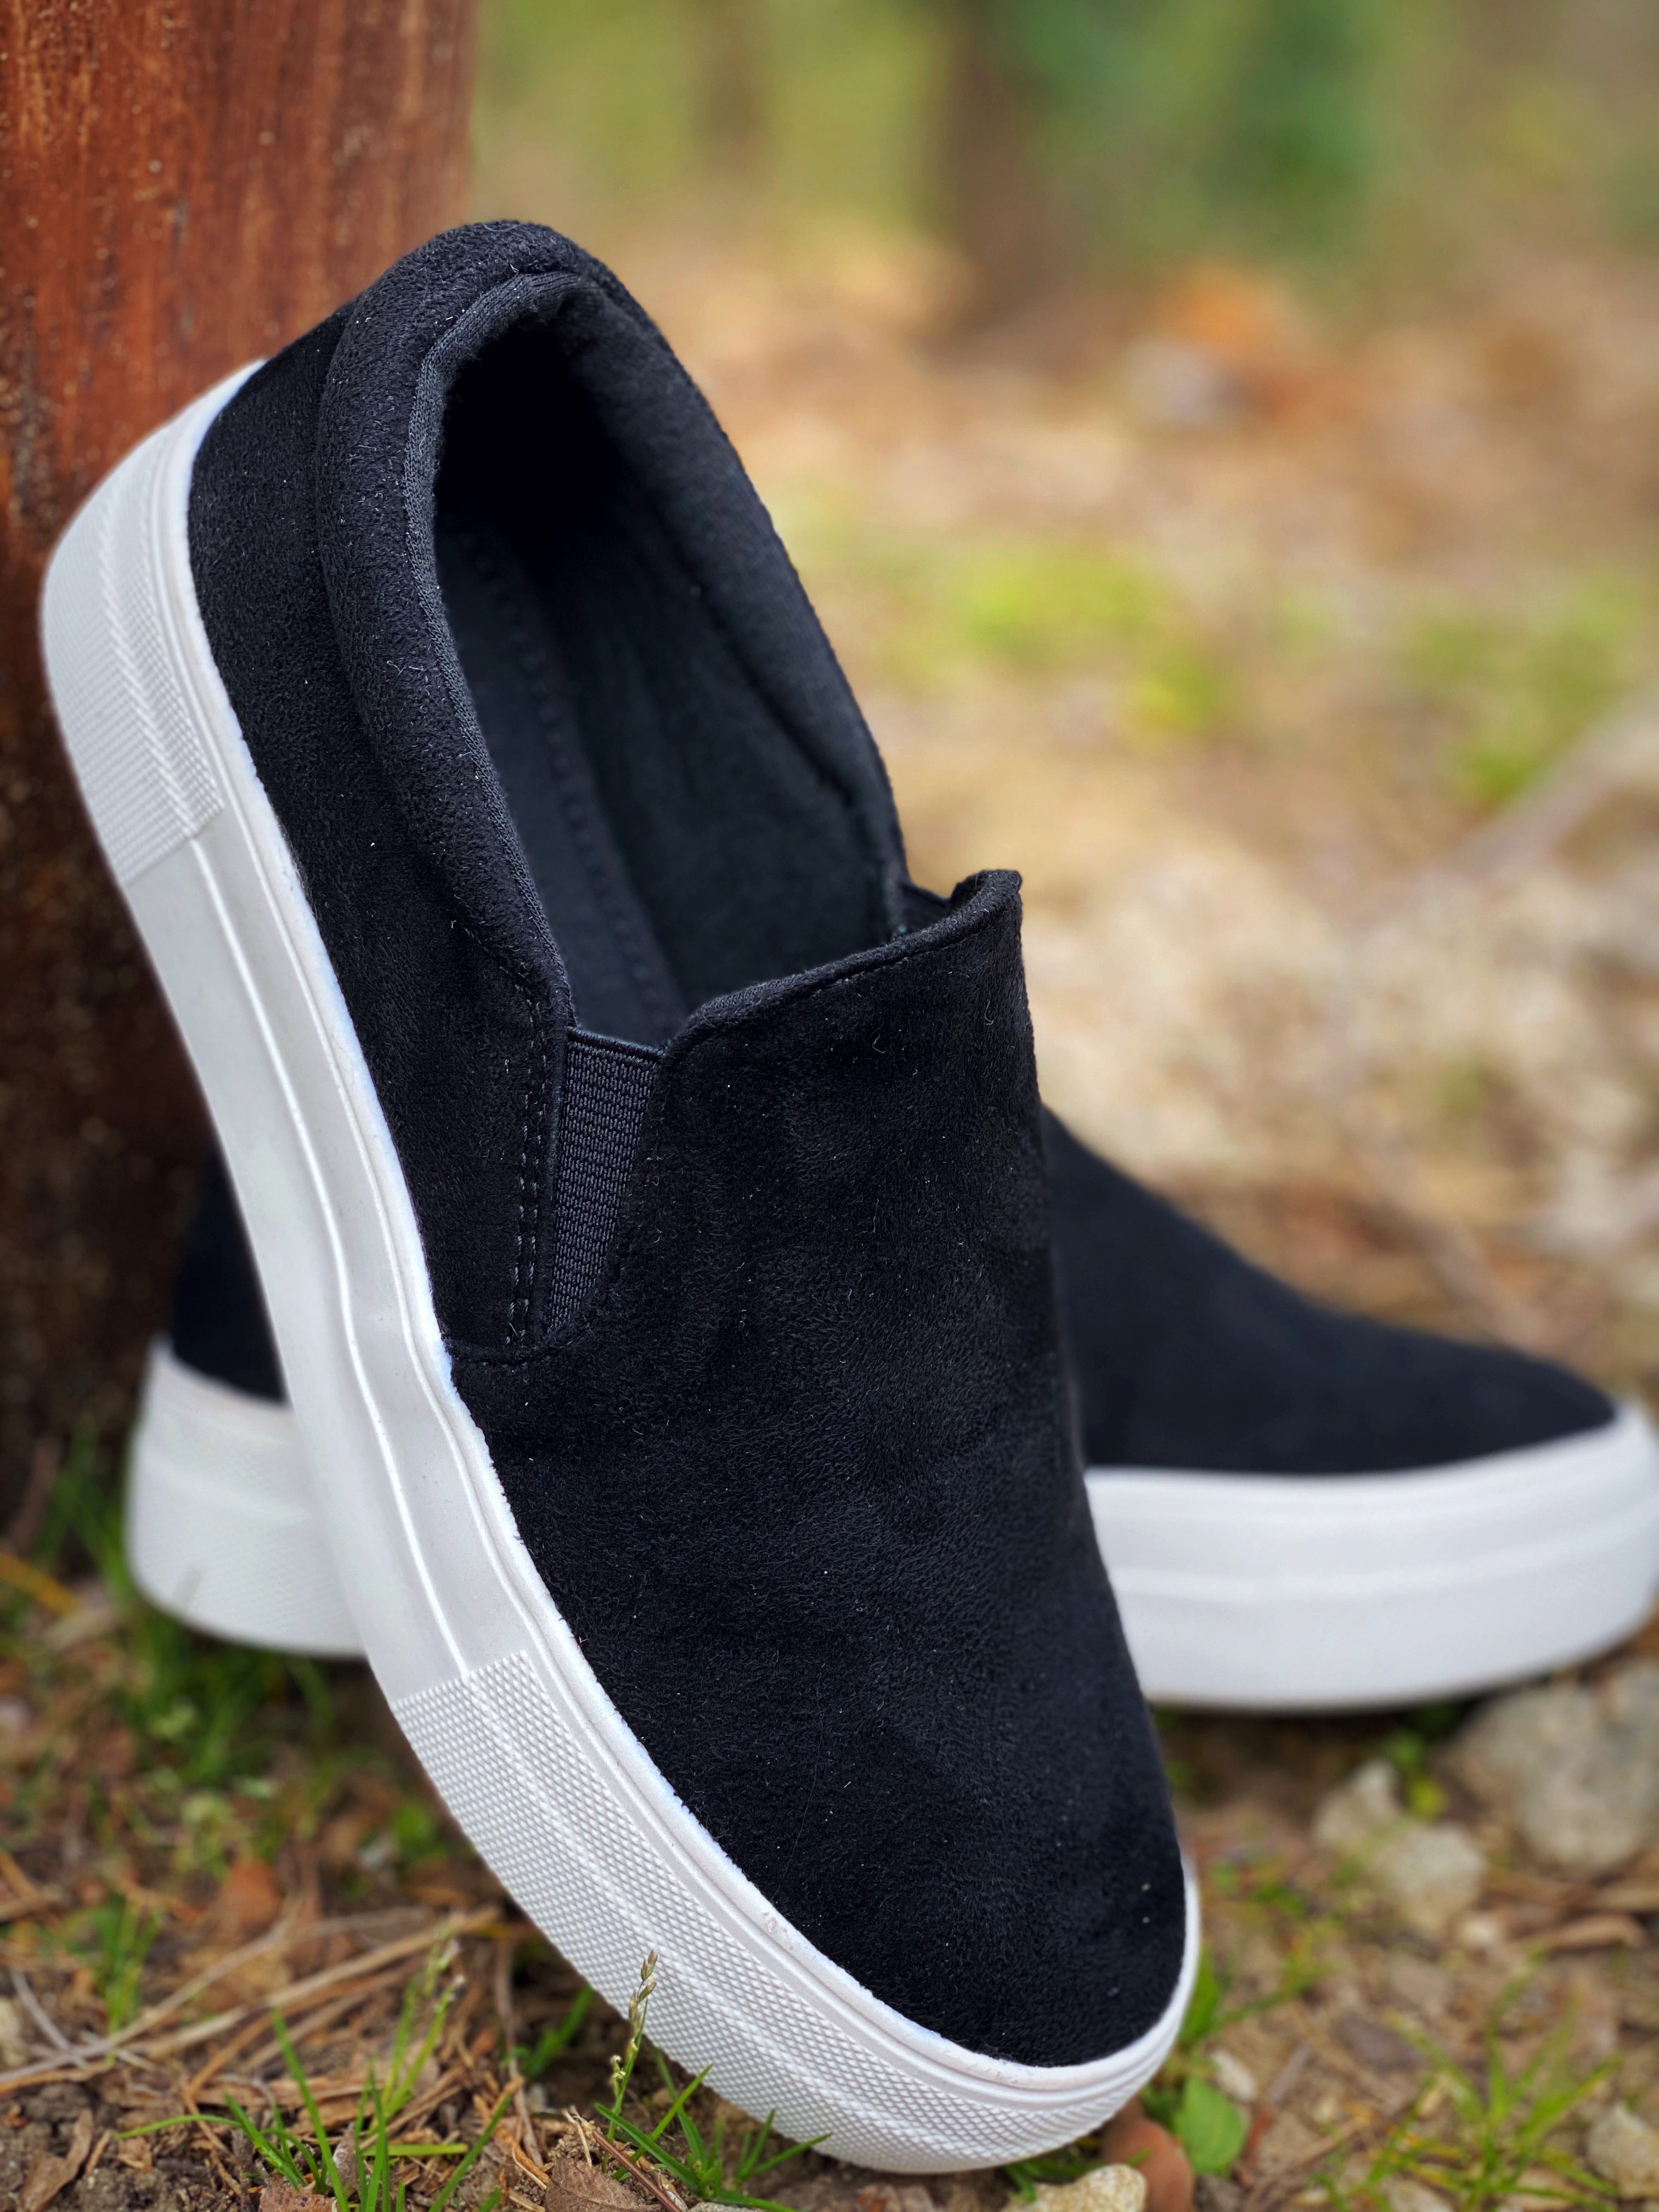 black suede platform sneakers